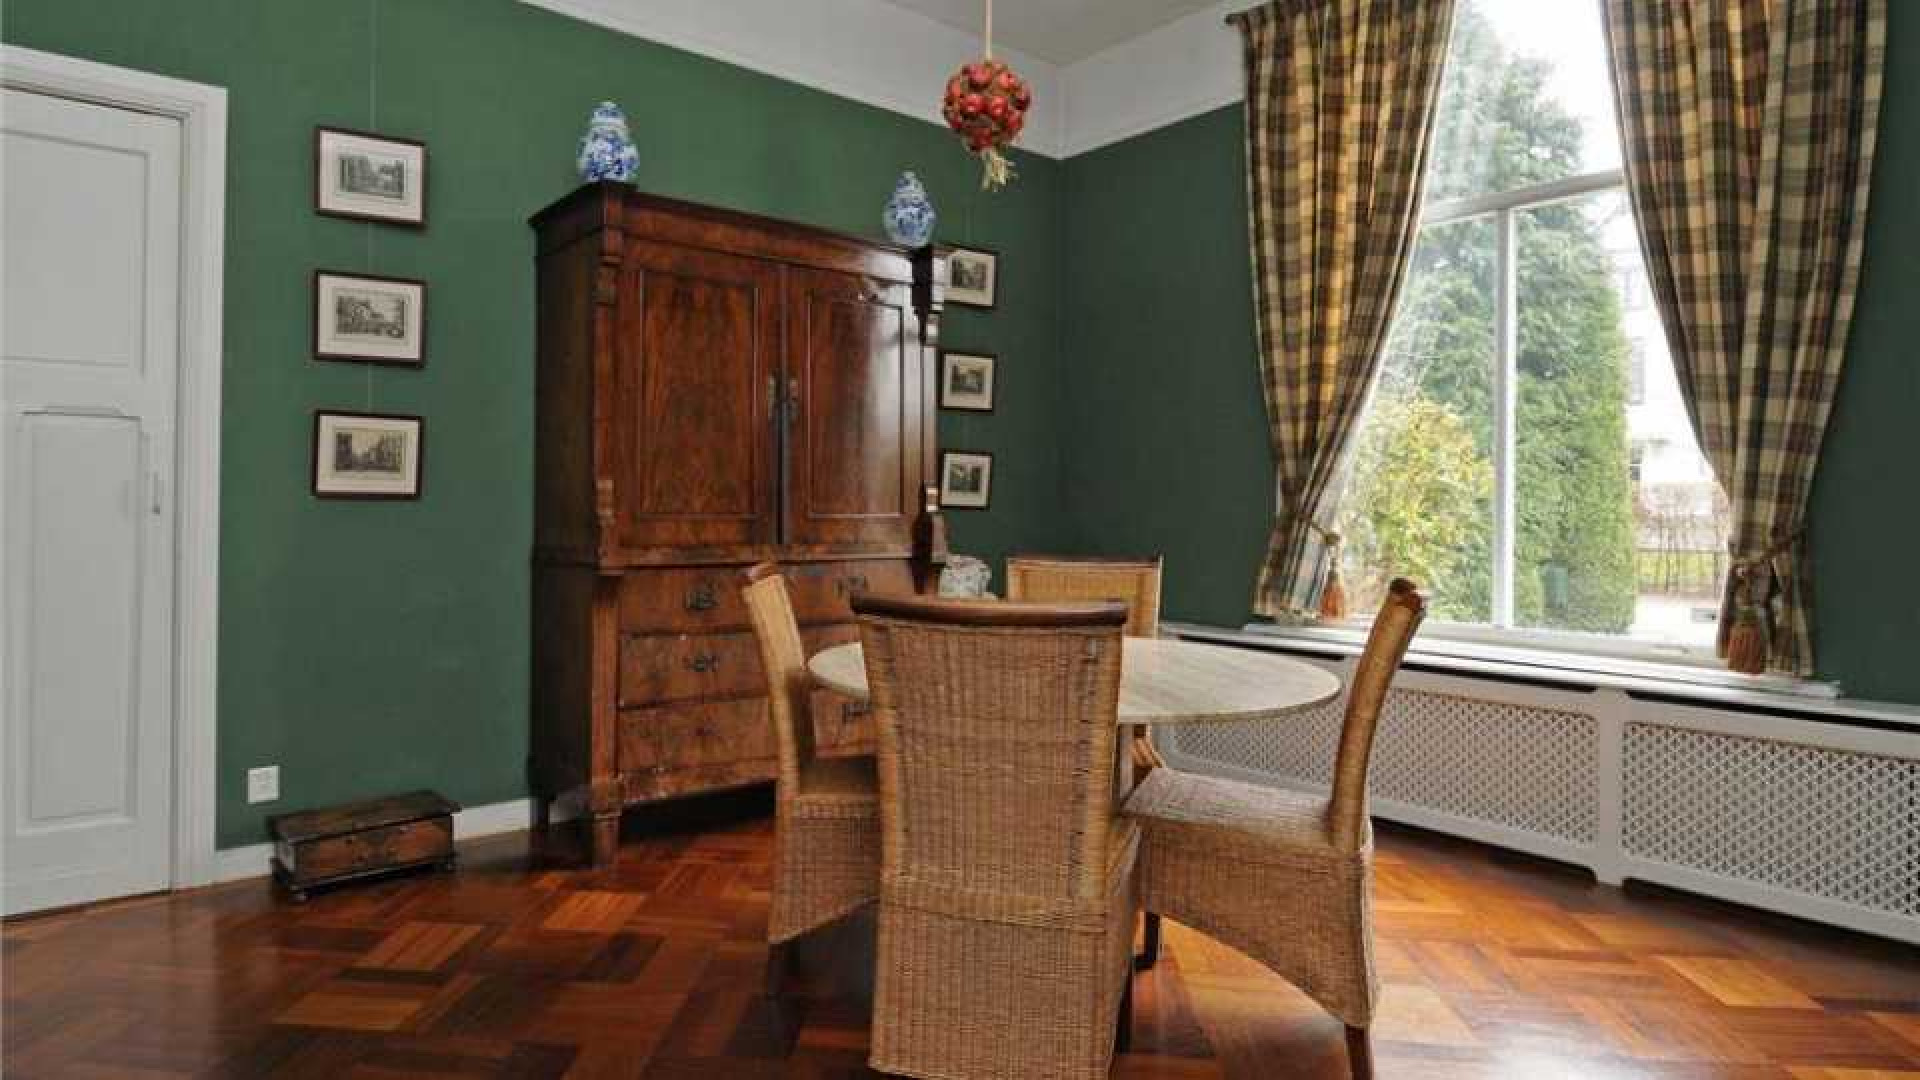 Frits Sissing scoort vette winst op verkoop van zijn oude huis. Zie foto's